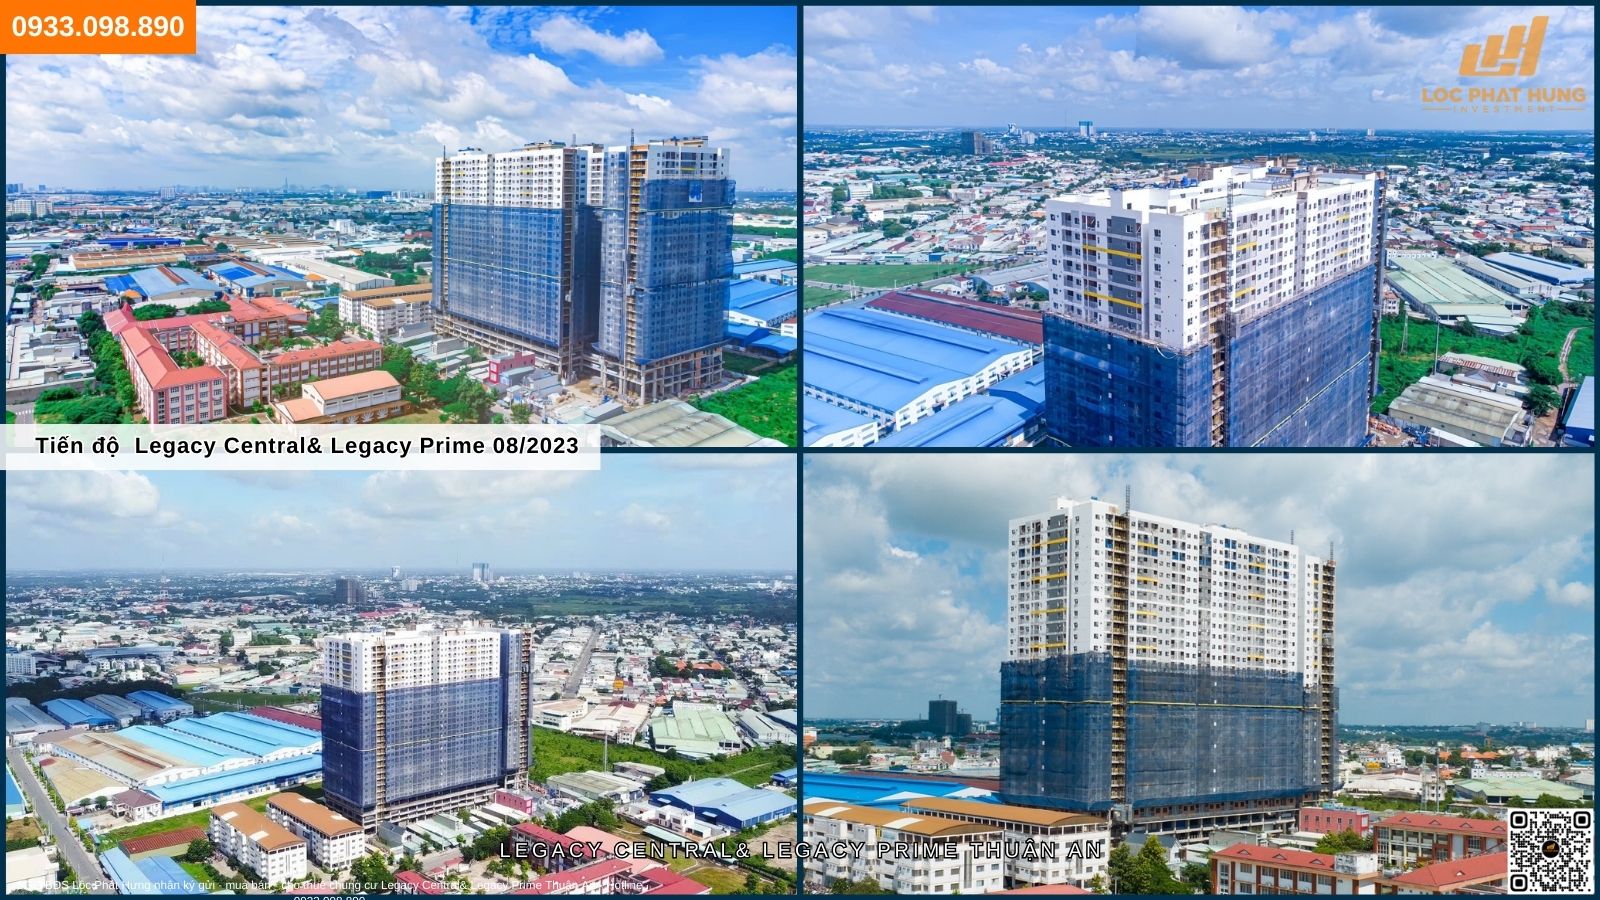 Tiến độ xây dựng chung cư Legacy Central & Legacy Prime TP Thuận An 08/2023